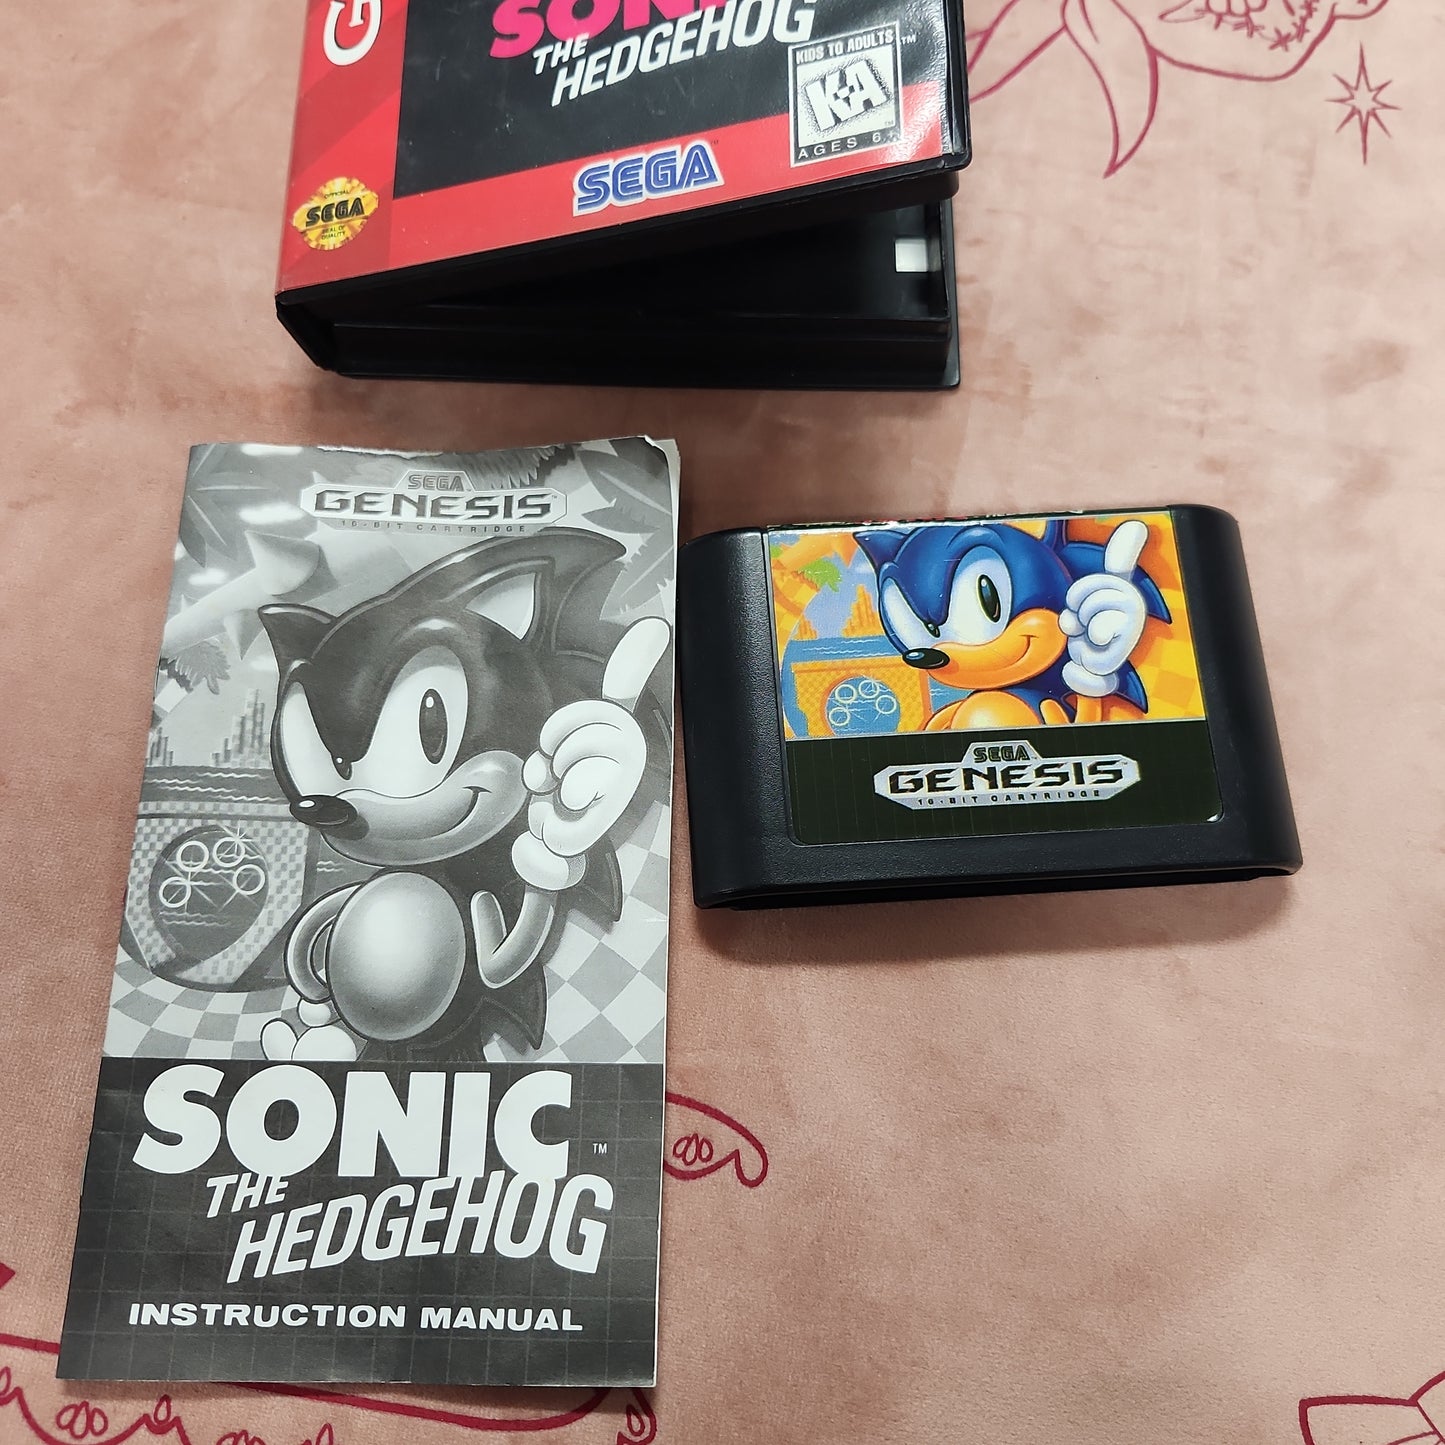 Sonic the hedgehog (Sega classic varient)